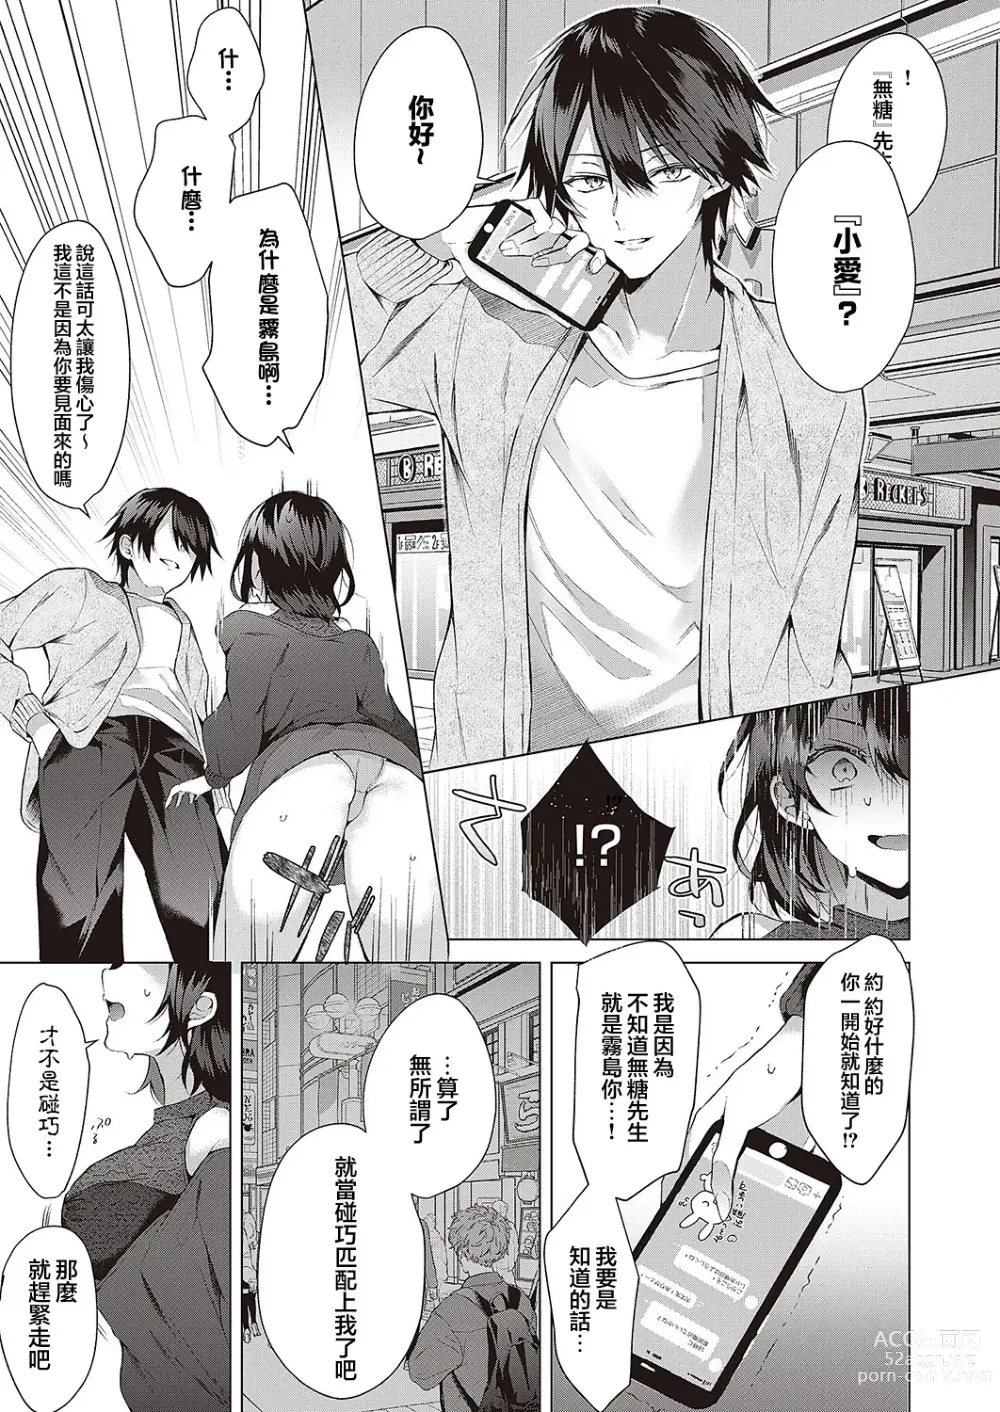 Page 7 of manga OUTOTSU Lovemotion!